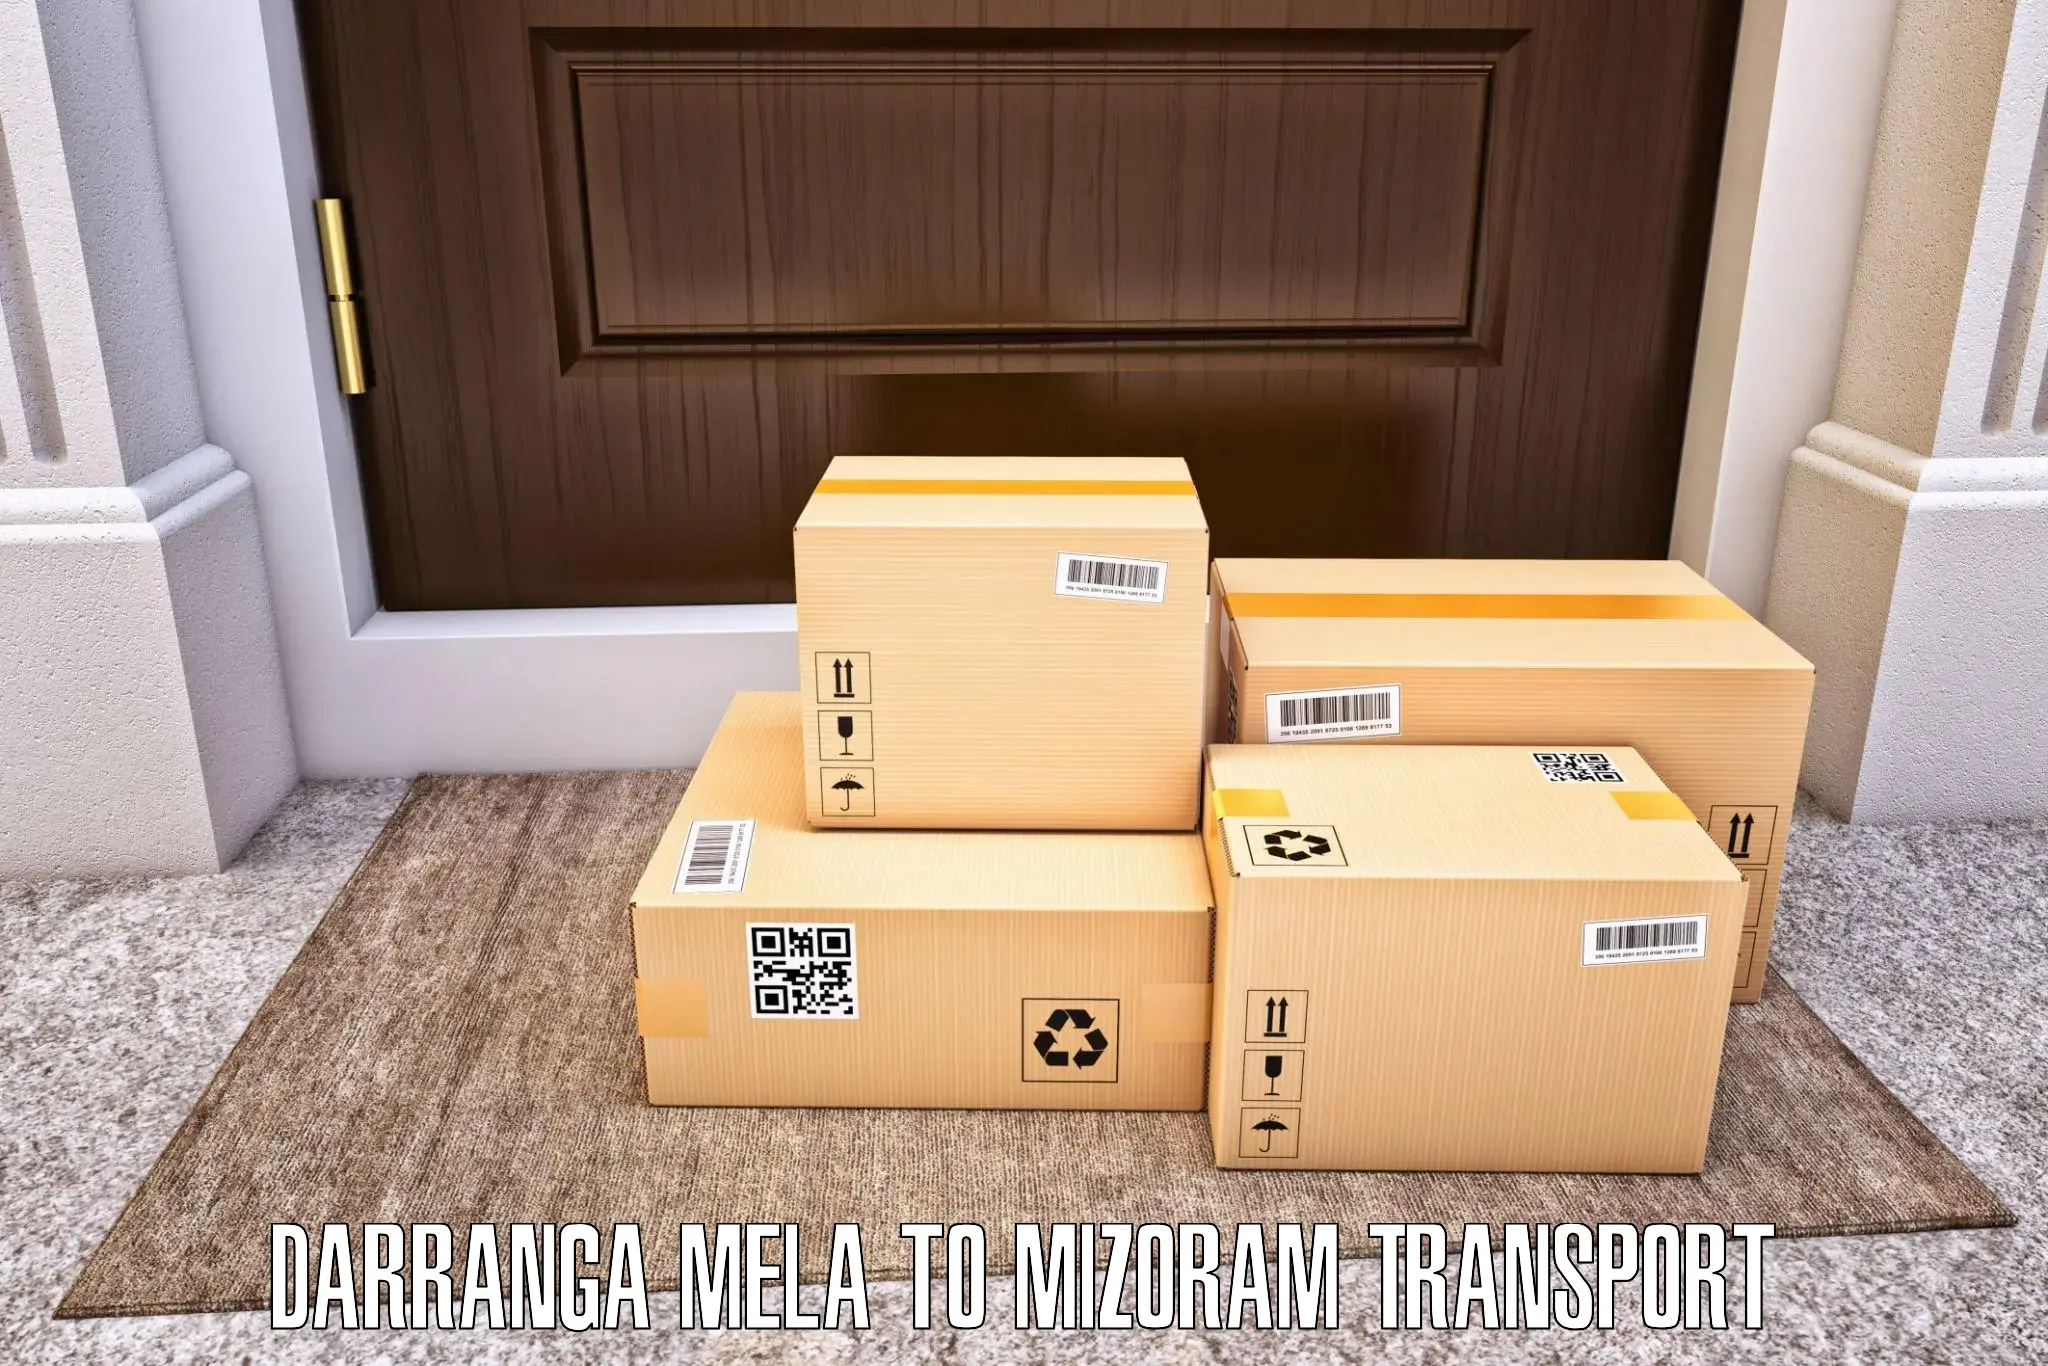 Cargo transportation services Darranga Mela to Mizoram